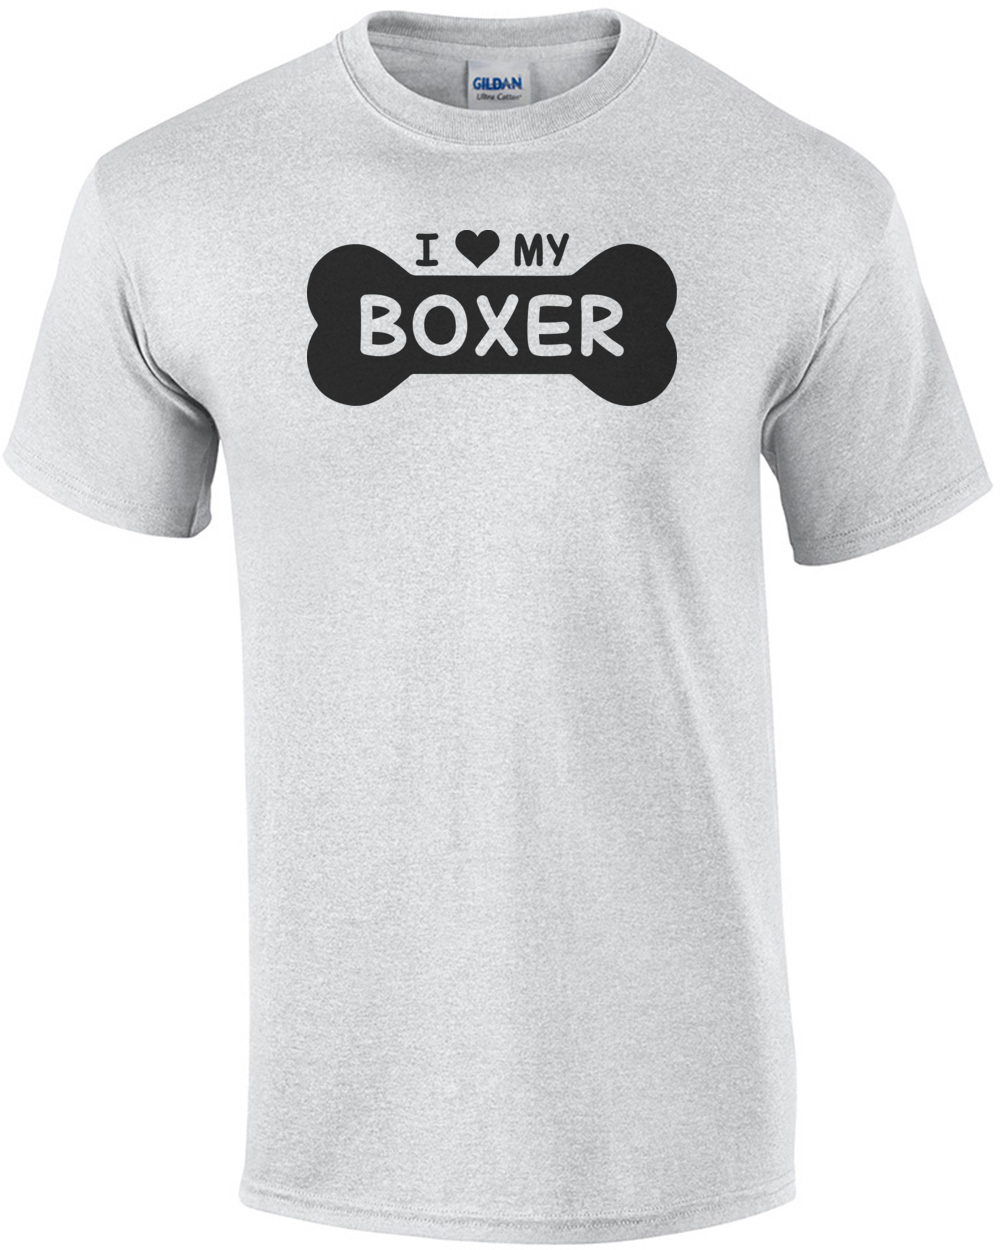 Tee Shirt I Love My Boxer Dog Shirt Mens Shirt 